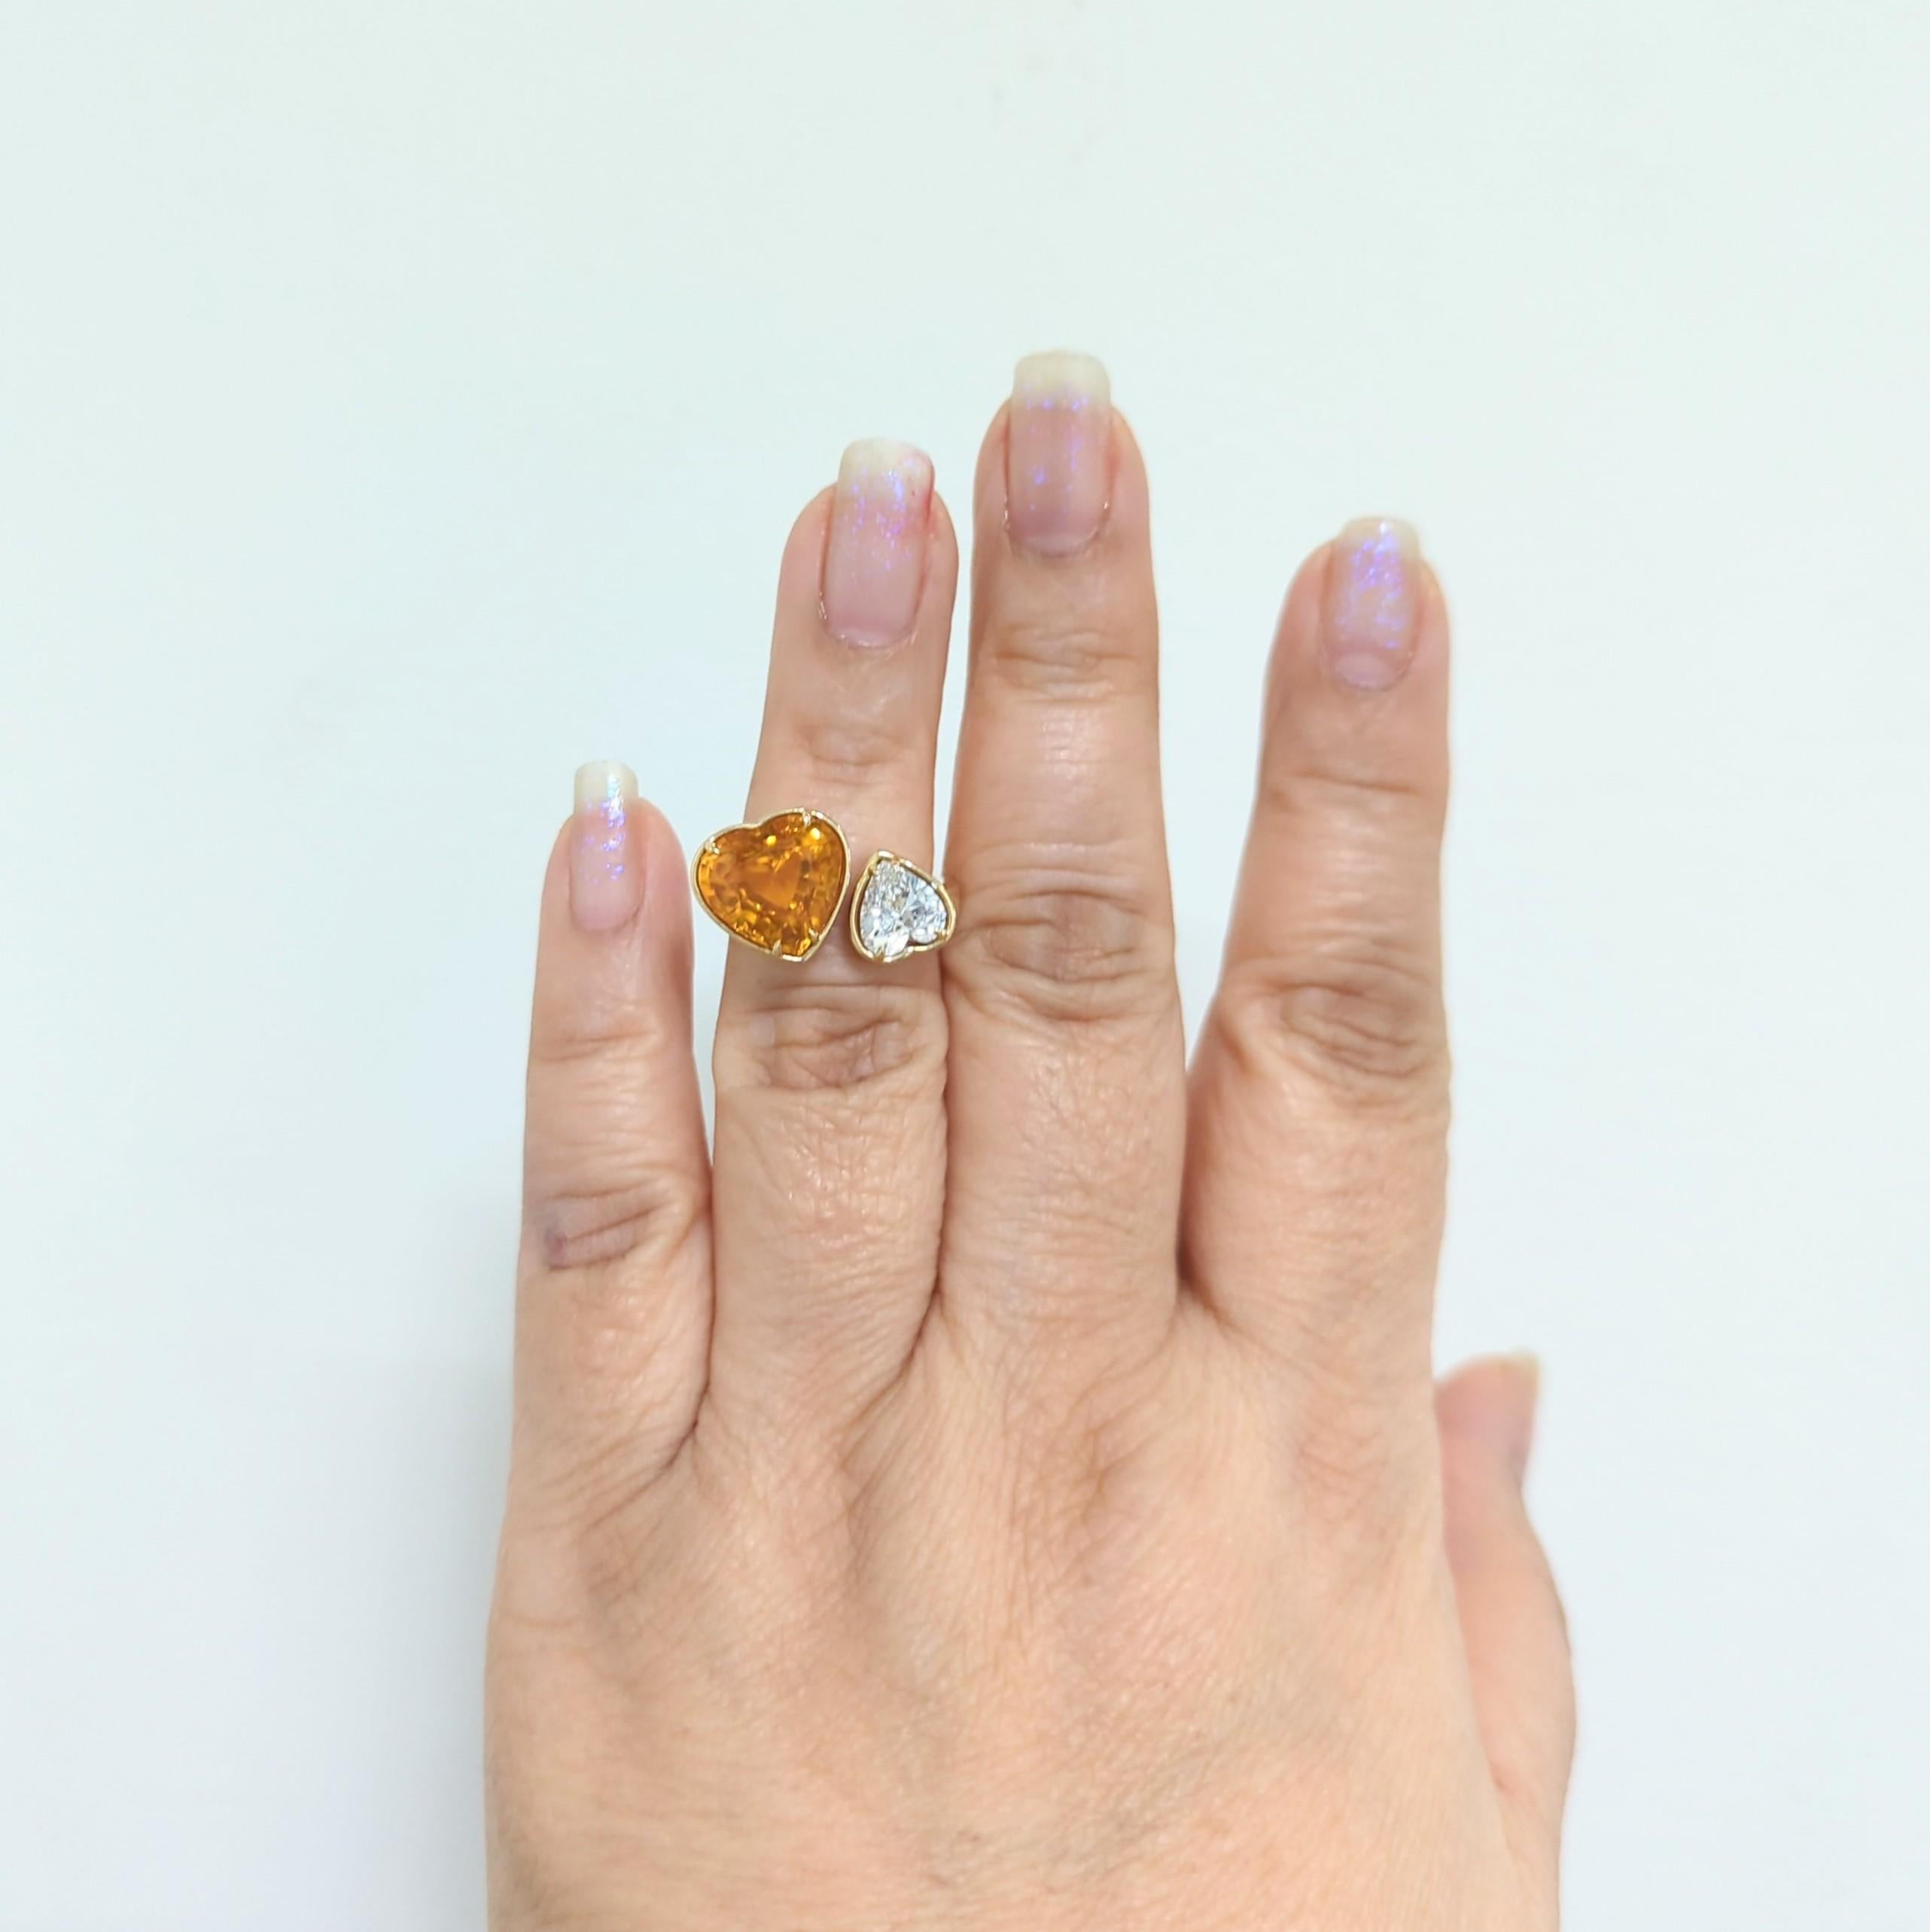 Magnifique bague toi et moi avec un diamant de 7,17 ct. Saphir orange GIA en cœur et 1,28 ct. GIA D SI1 diamant blanc en forme de cœur.  Fabriqué à la main en or jaune 18k.  Bague taille 6.5.  Certificats GIA inclus.